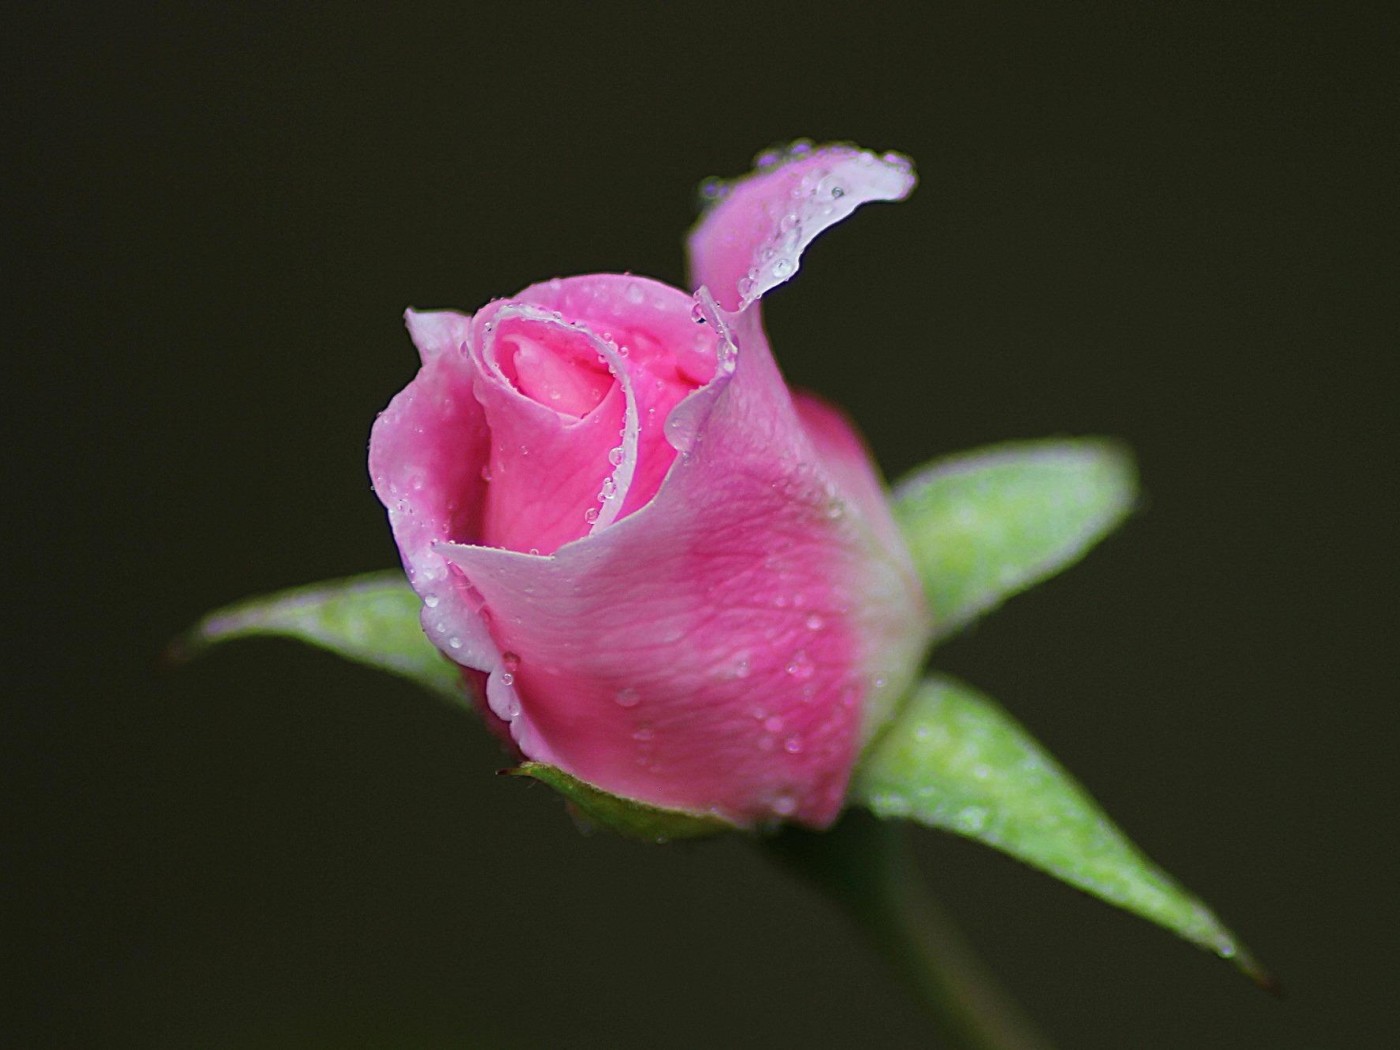 rosebud wallpaper,planta floreciendo,rosado,flor,pétalo,brote